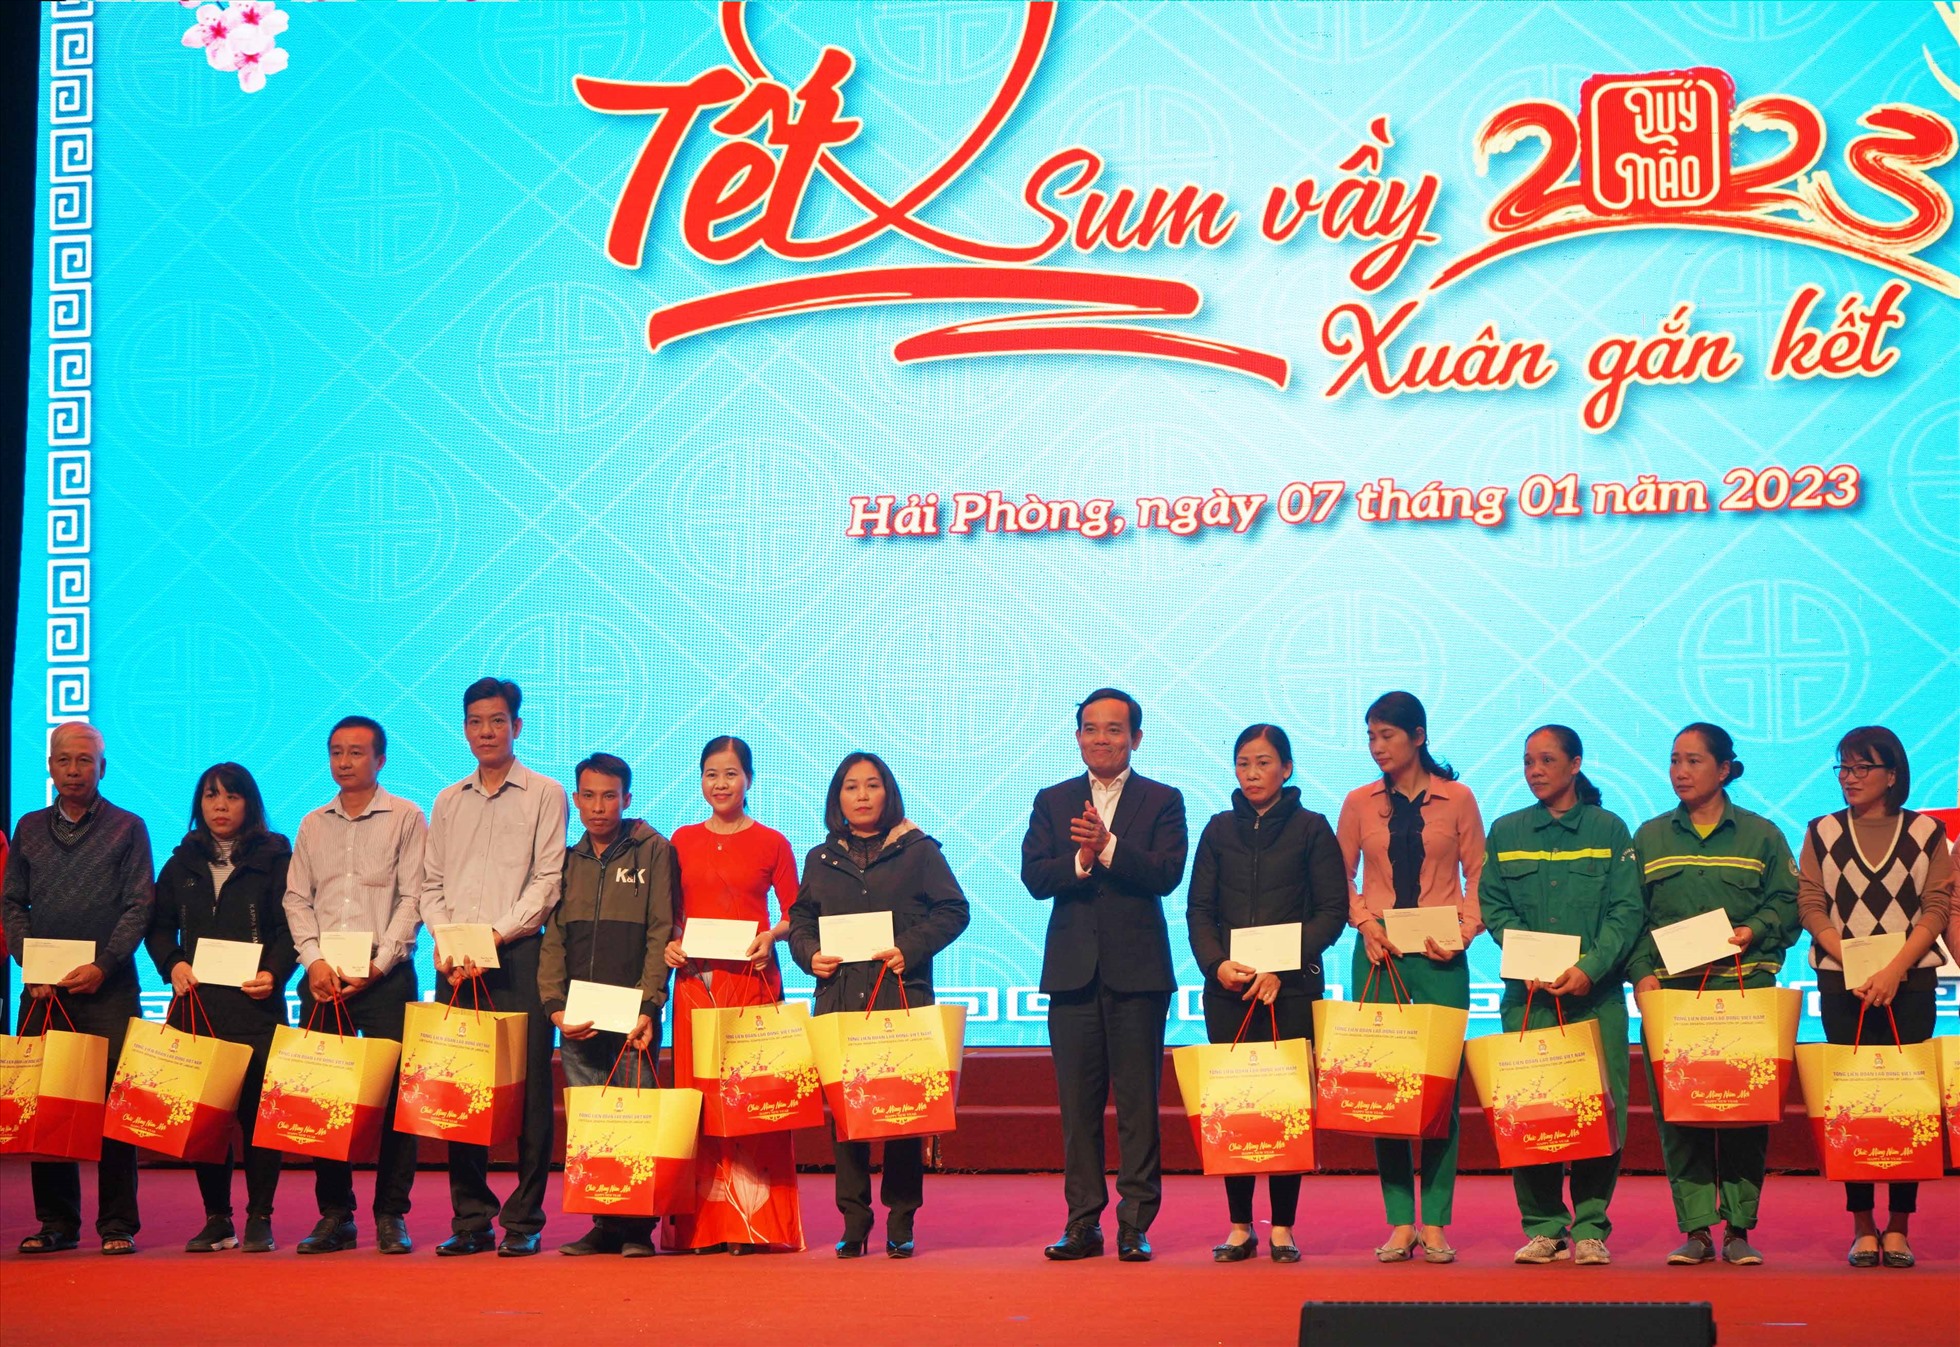 Phó Thủ tướng Trần Lưu Quang tặng quà Tết cho công nhân trong chương trình Tết Sum vầy